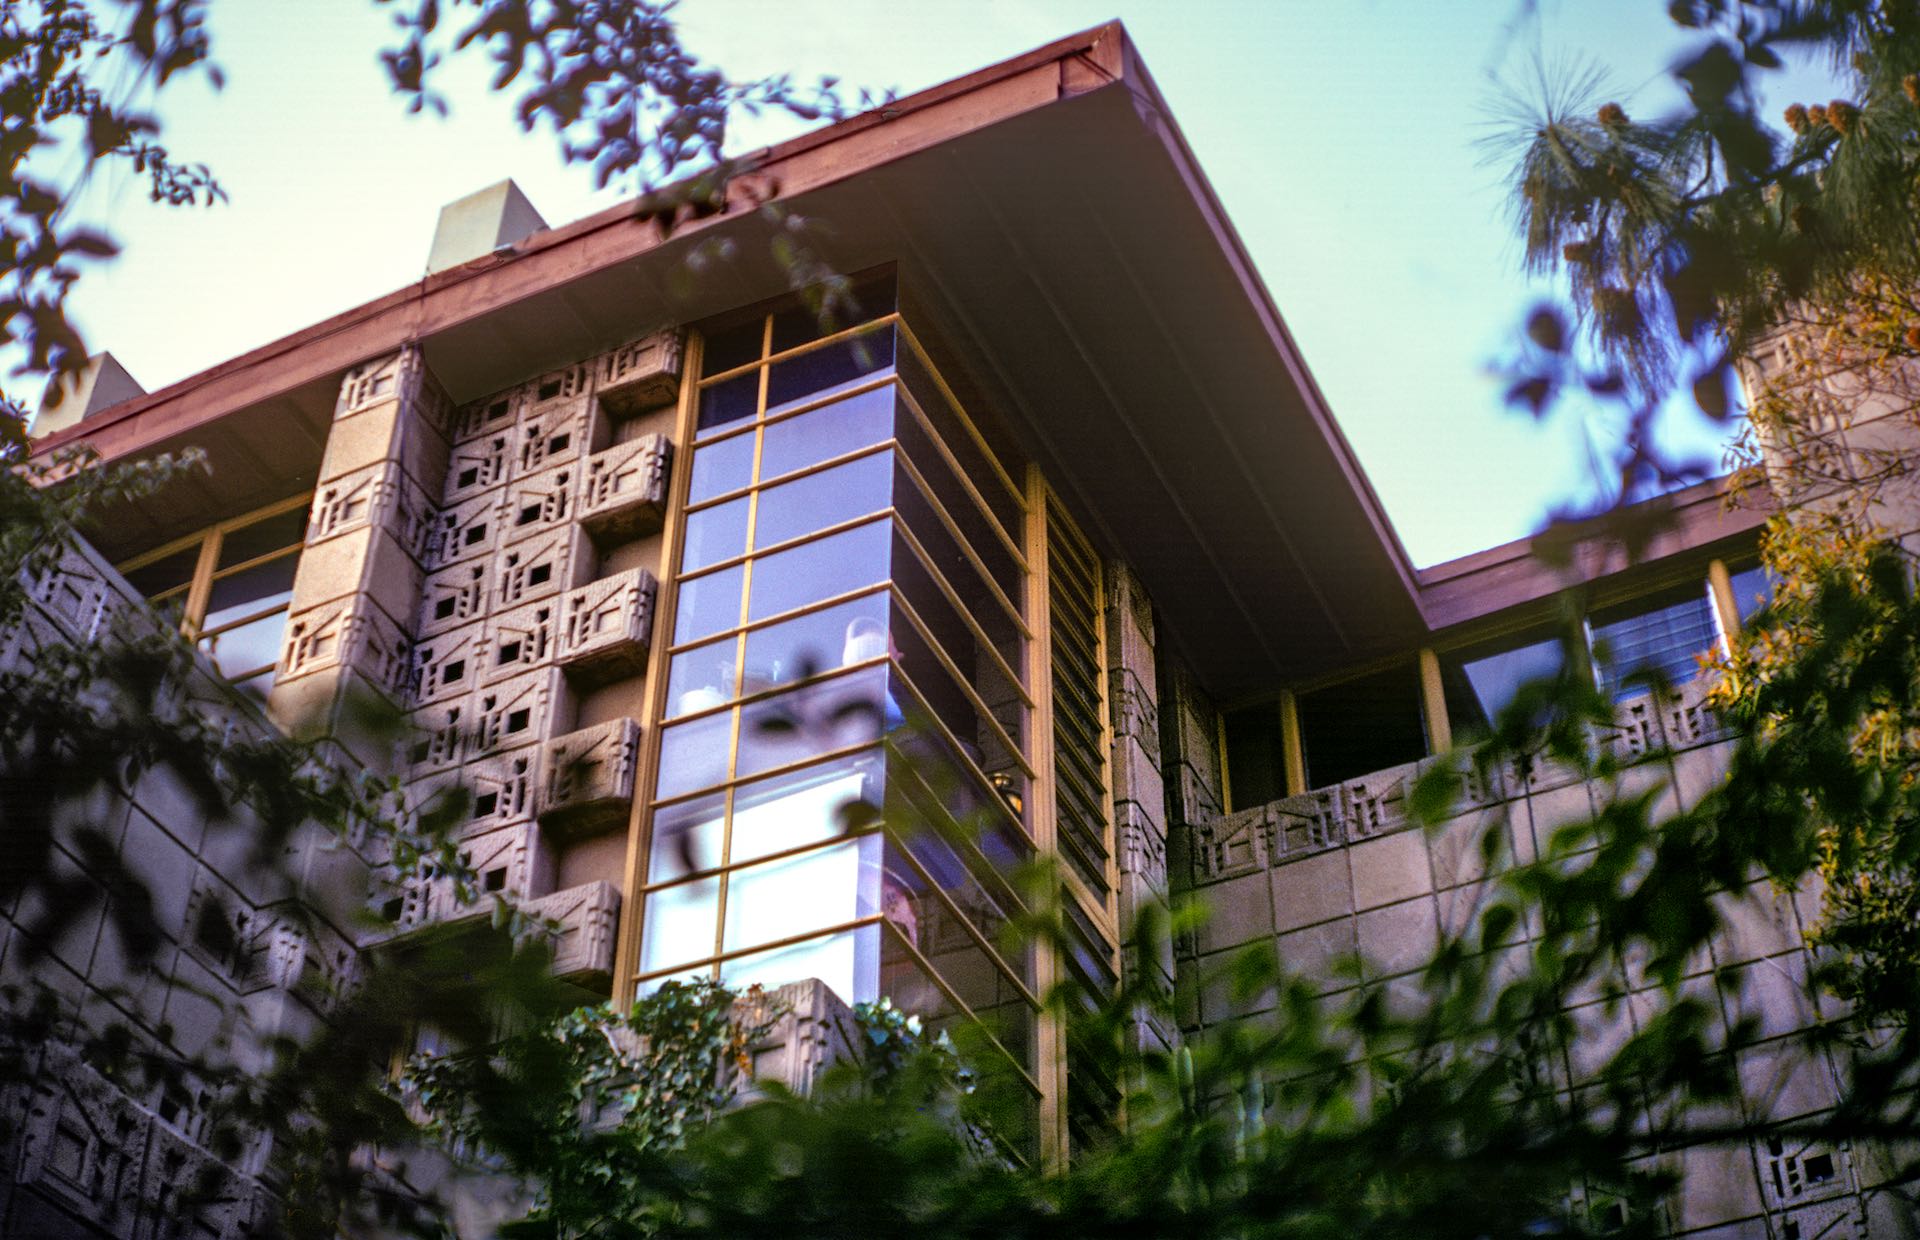 imagen 1 de Se vende la casa de los Freeman, obra y arte de Frank Lloyd Wright.